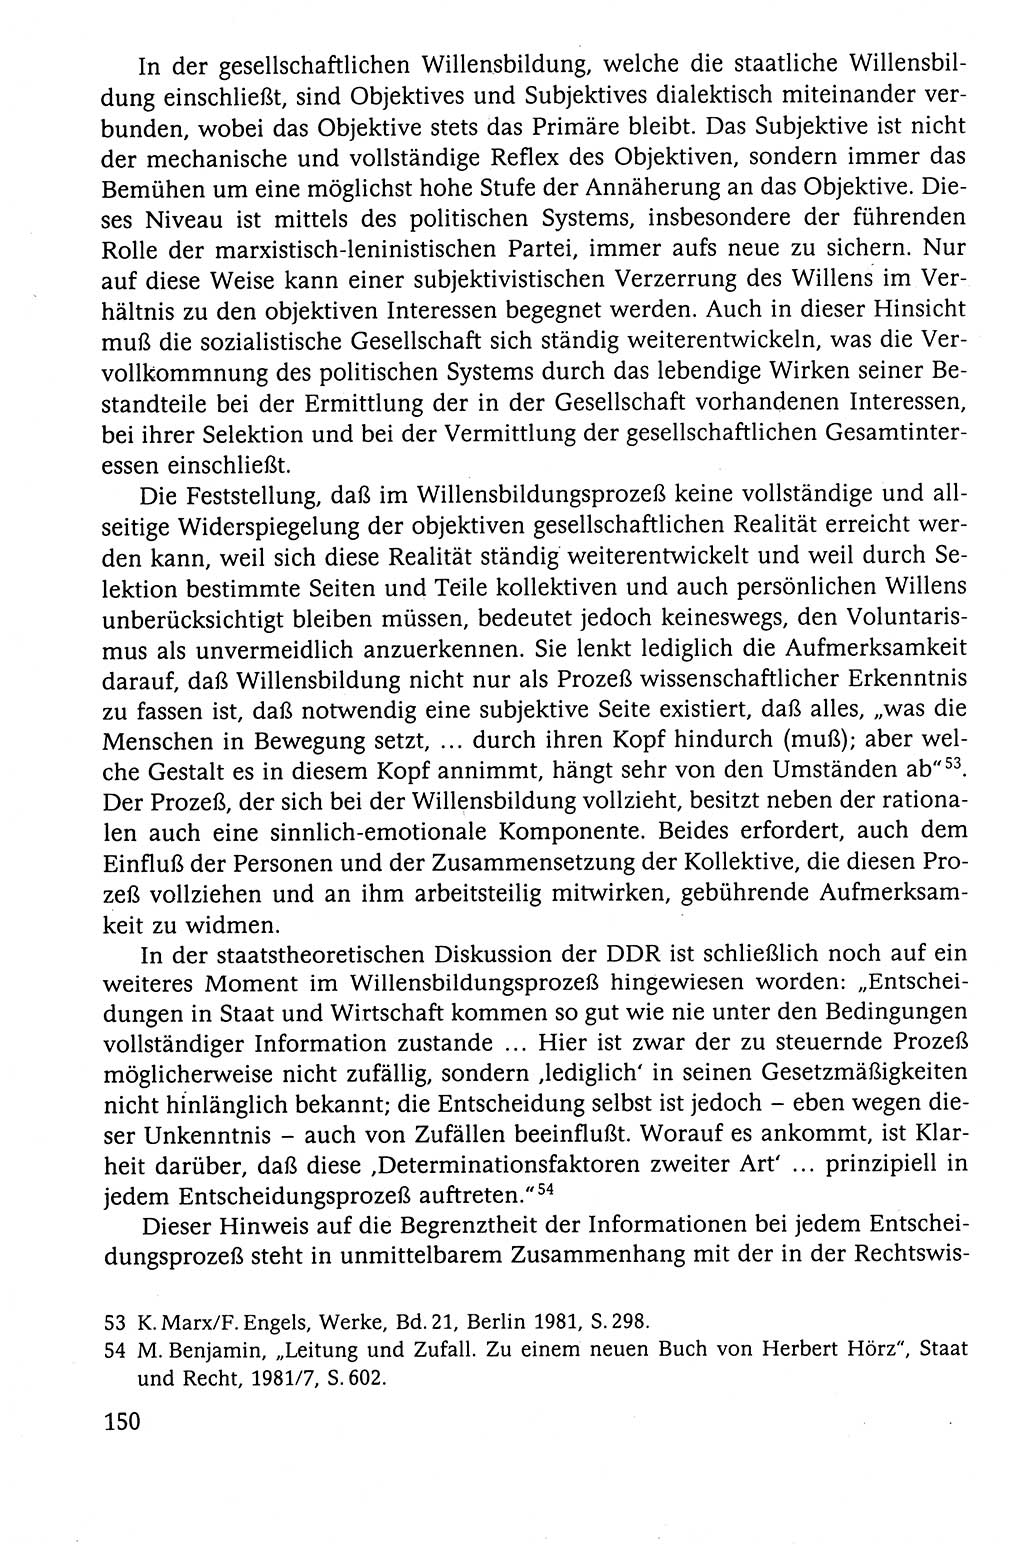 Der Staat im politischen System der DDR (Deutsche Demokratische Republik) 1986, Seite 150 (St. pol. Sys. DDR 1986, S. 150)